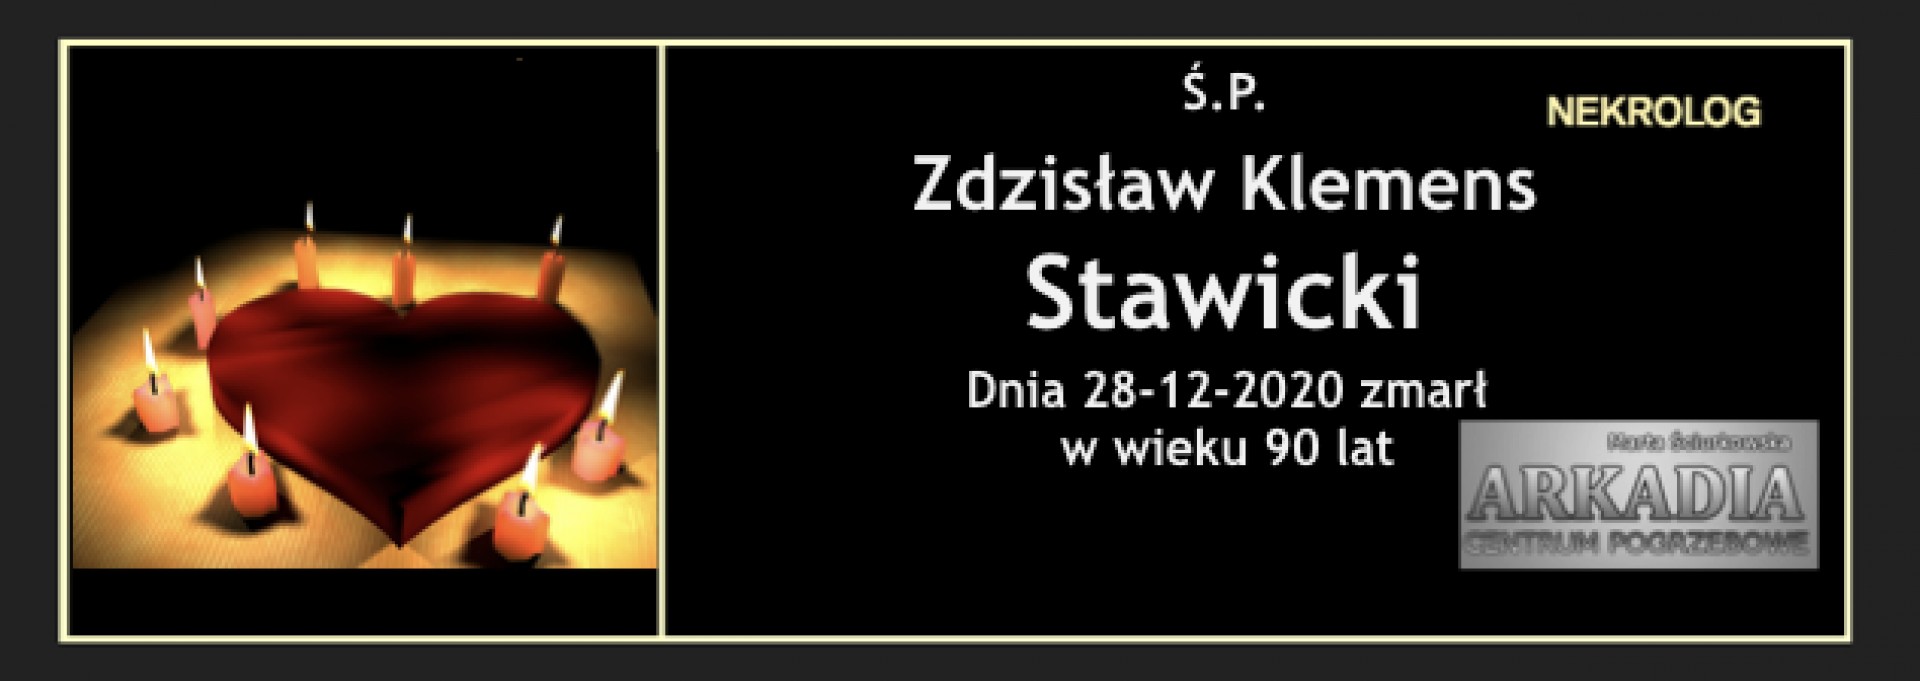 Ś.P. Zdzisław Klemens Stawicki